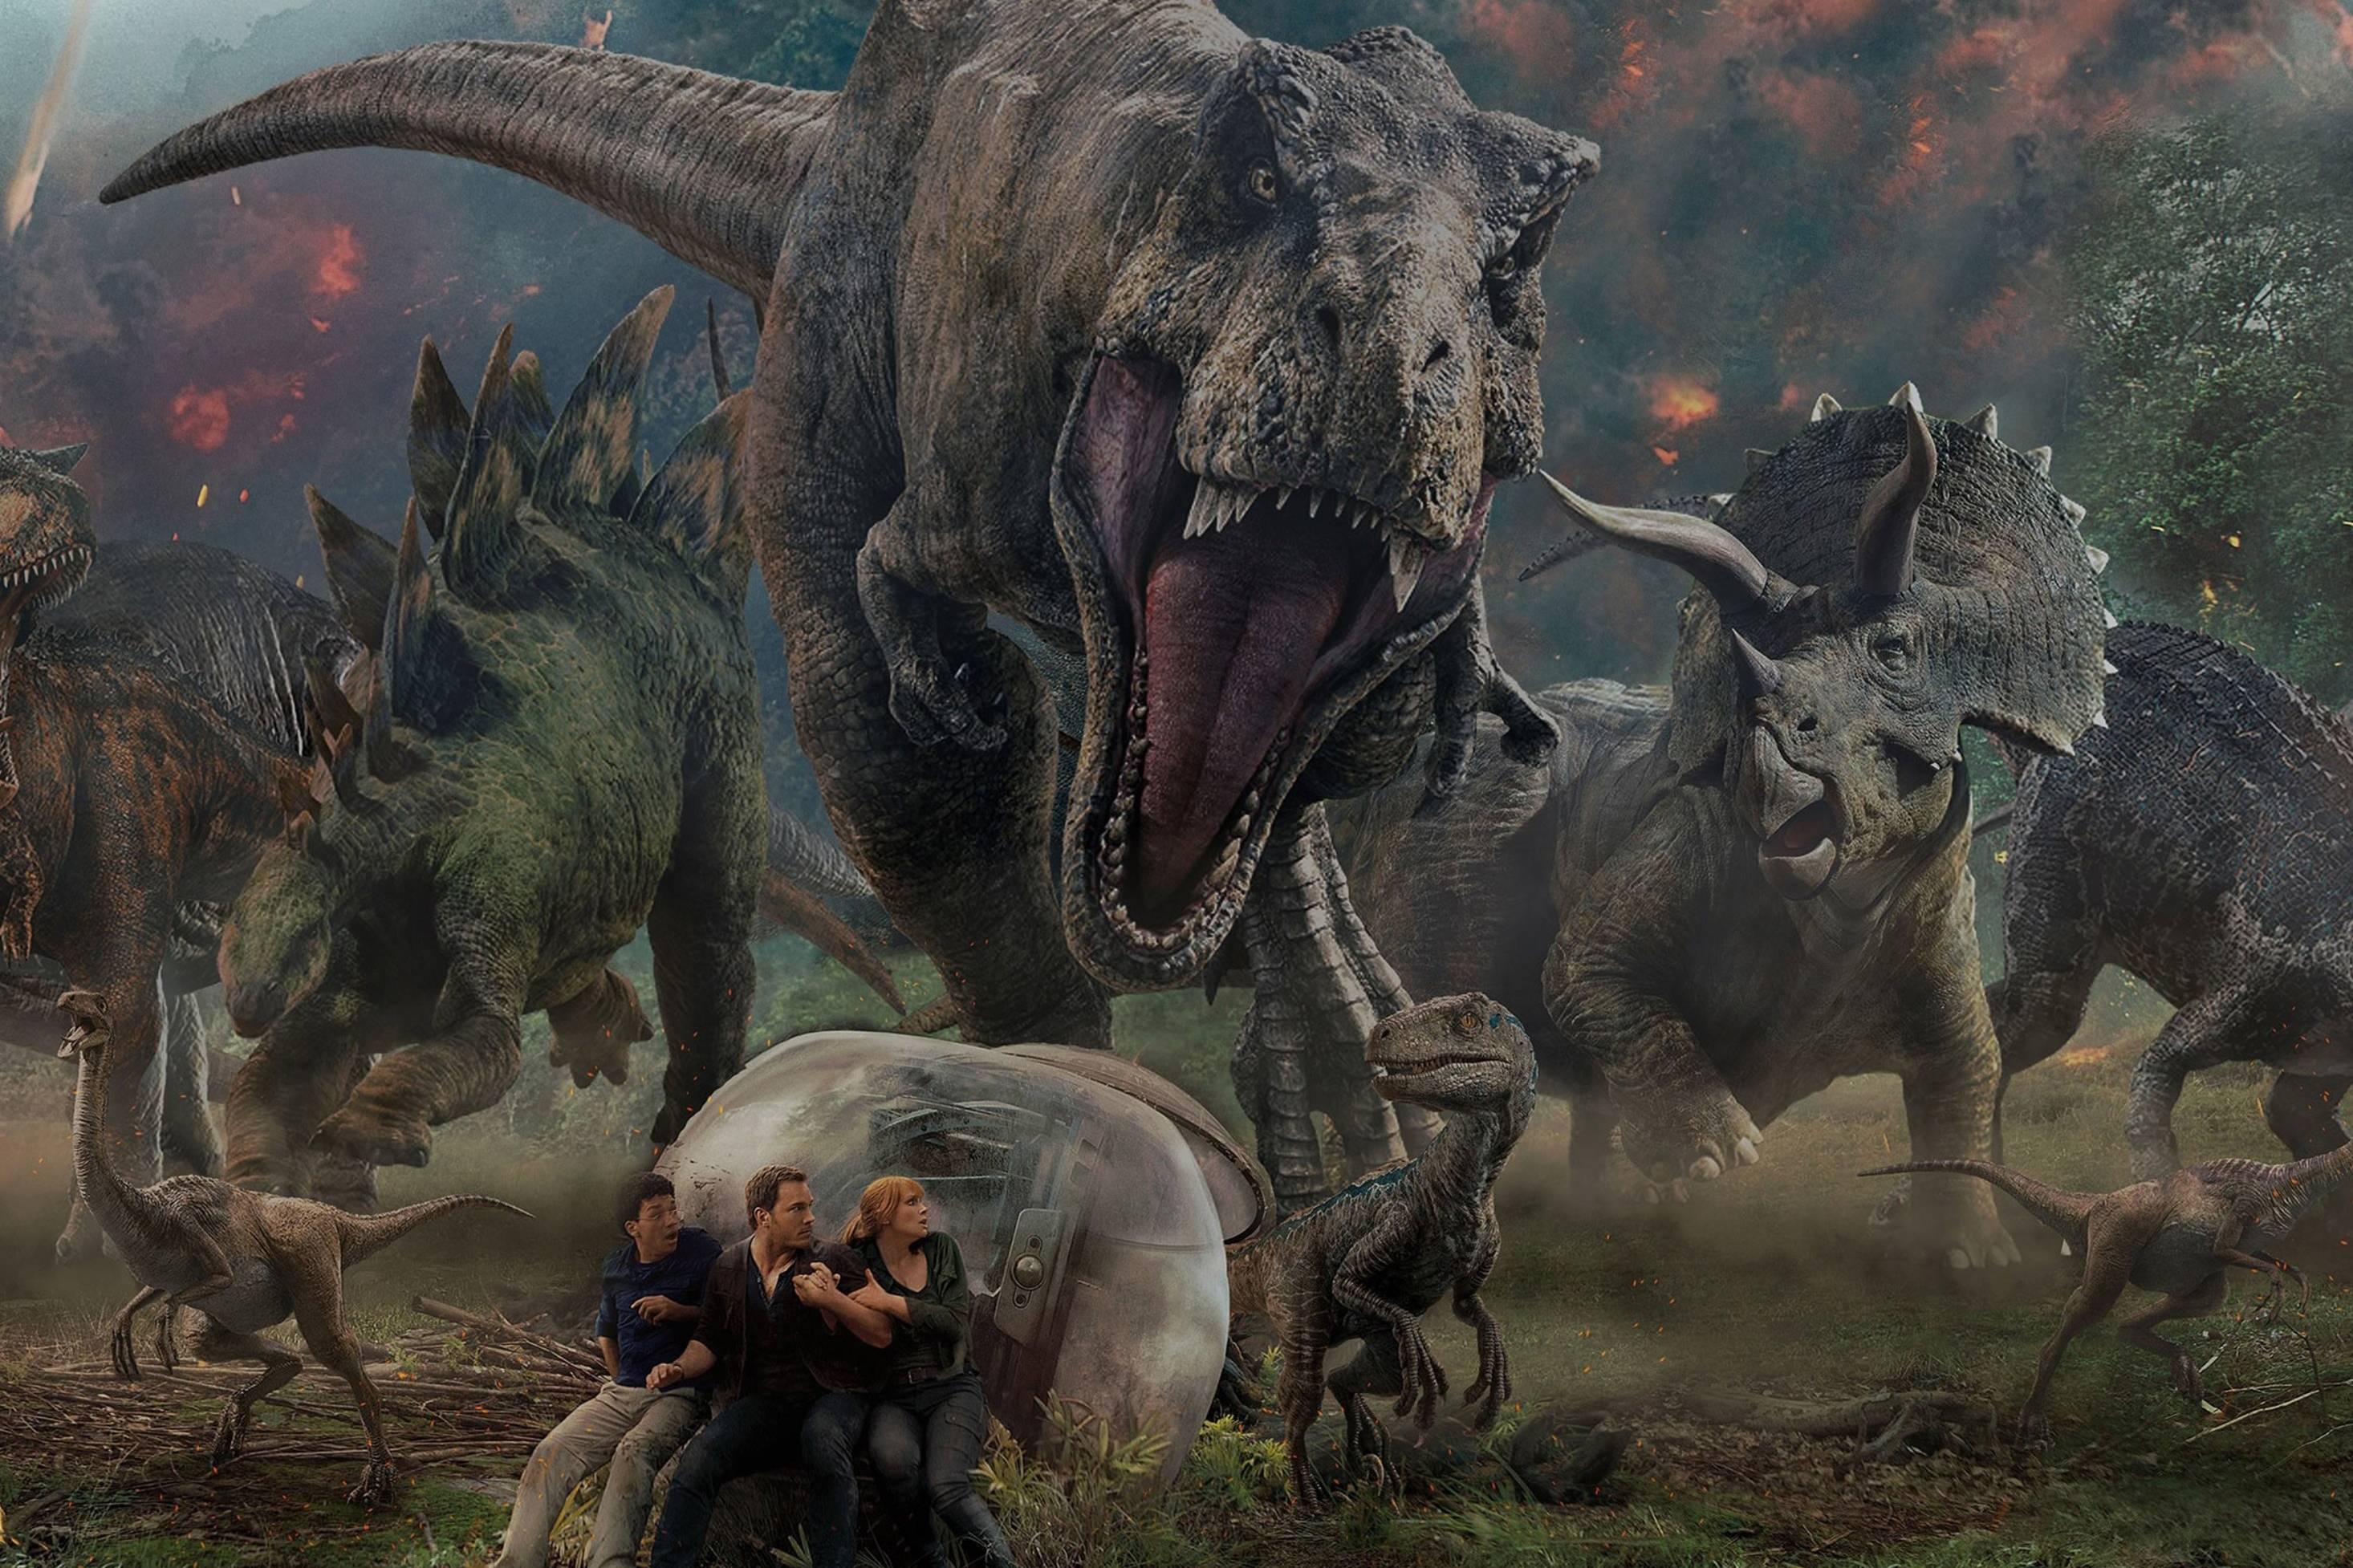 《侏罗纪》:当霸王龙遭遇南方巨兽龙后,为什么立马变怂逃跑了?